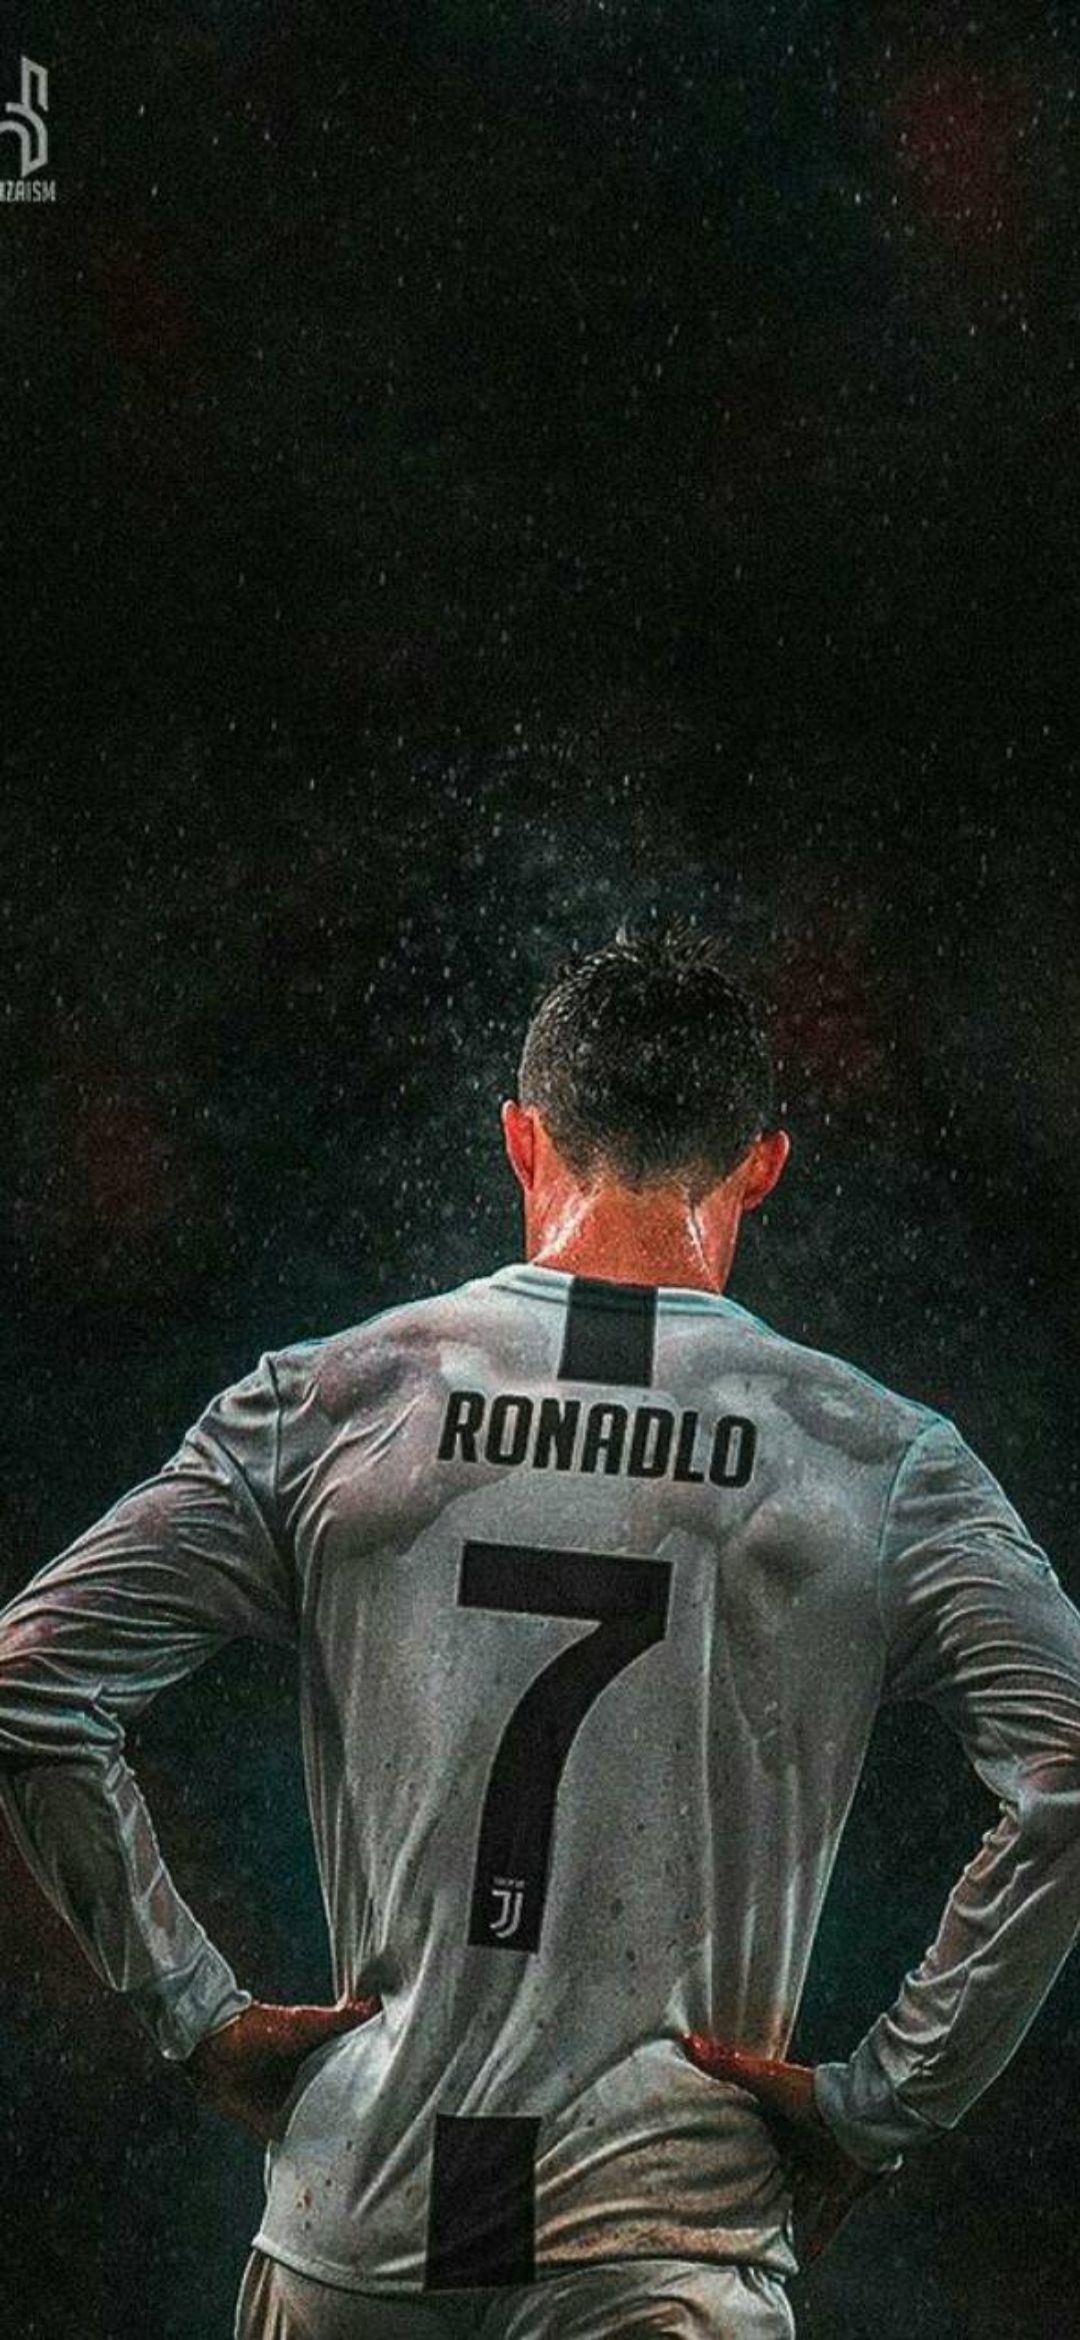 Cristiano Ronaldo iPhone Wallpaper Download [ HD ]. Cristiano ronaldo juventus, Cristiano ronaldo wallpaper, Ronaldo juventus